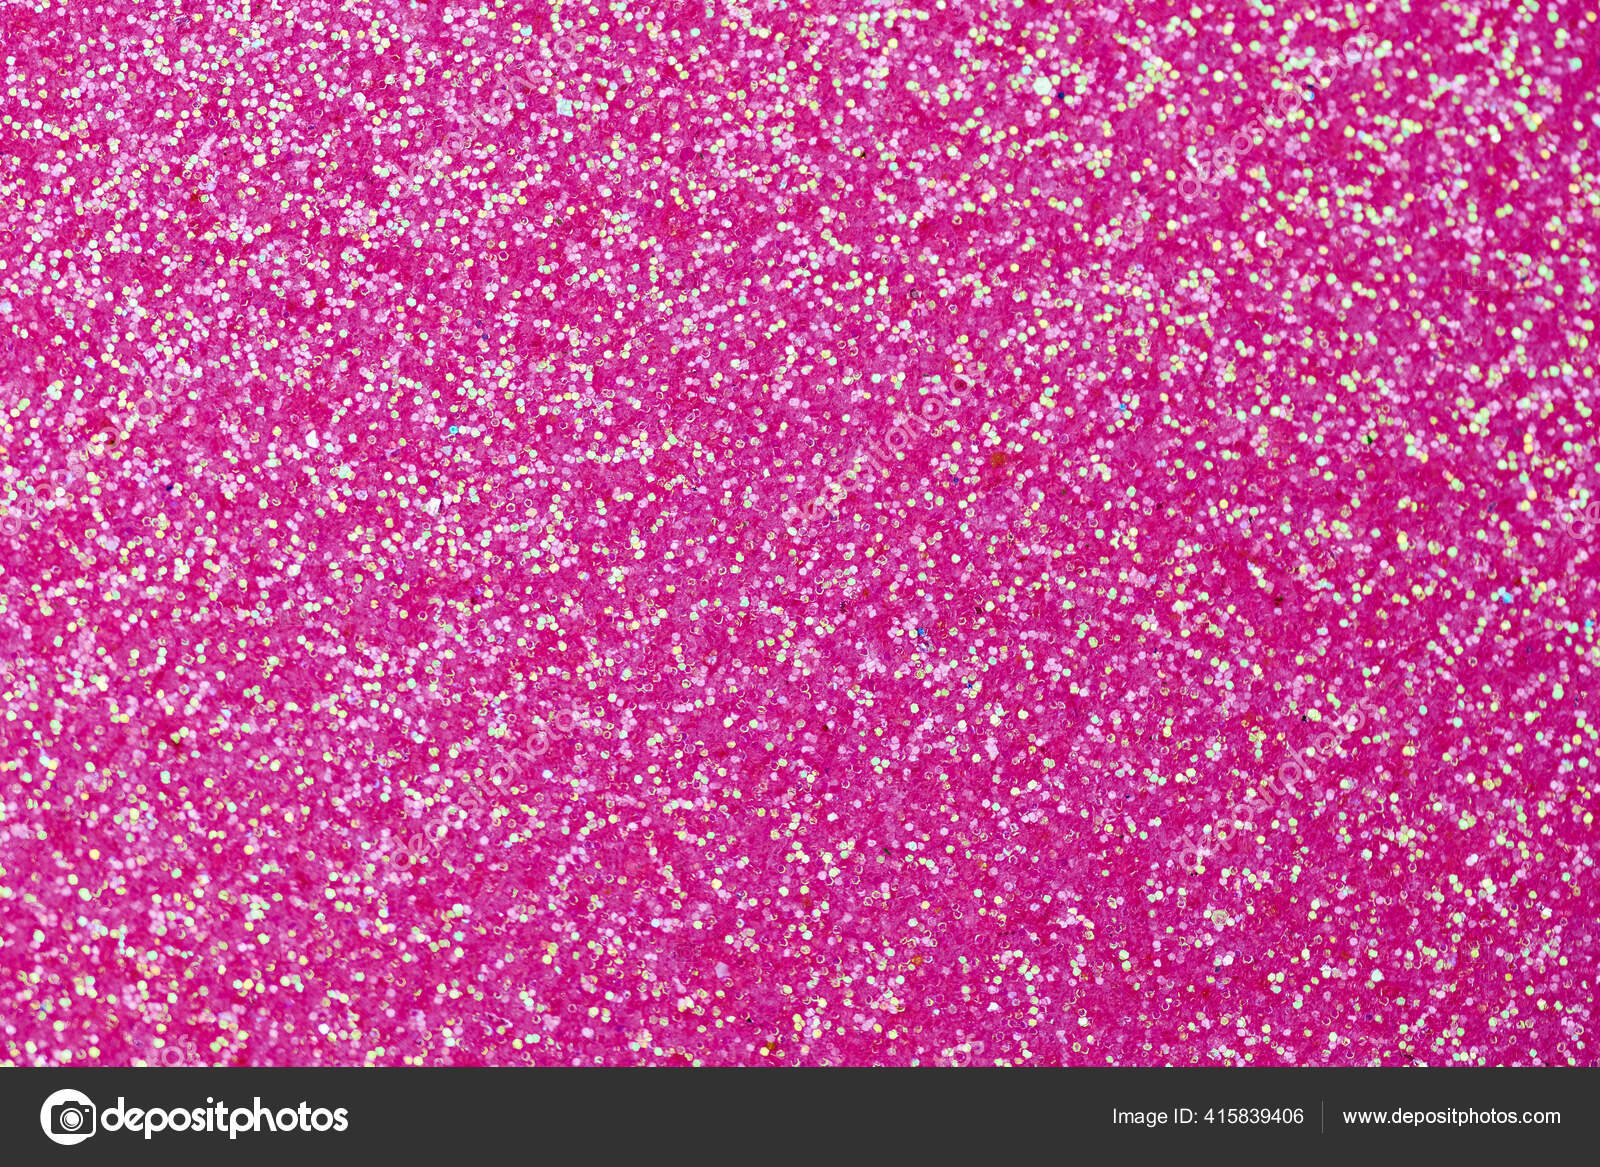 hot pink glitter paper